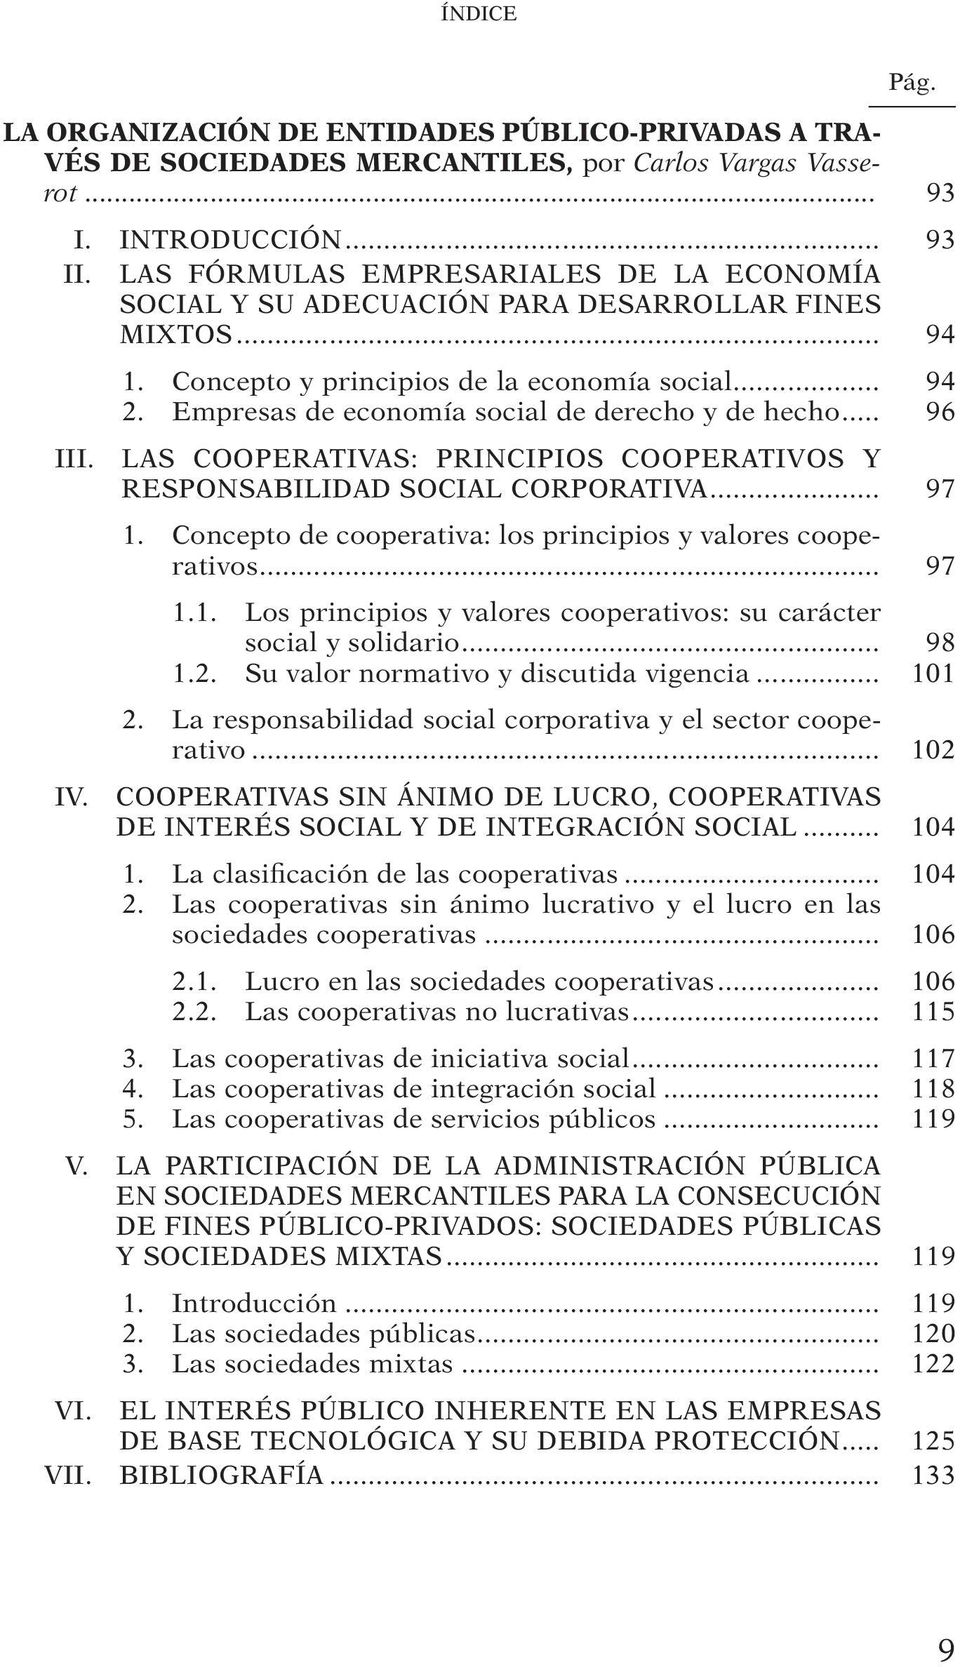 Empresas de economía social de derecho y de hecho... 96 III. LAS COOPERATIVAS: PRINCIPIOS COOPERATIVOS Y RESPONSABILIDAD SOCIAL CORPORATIVA... 97 1.